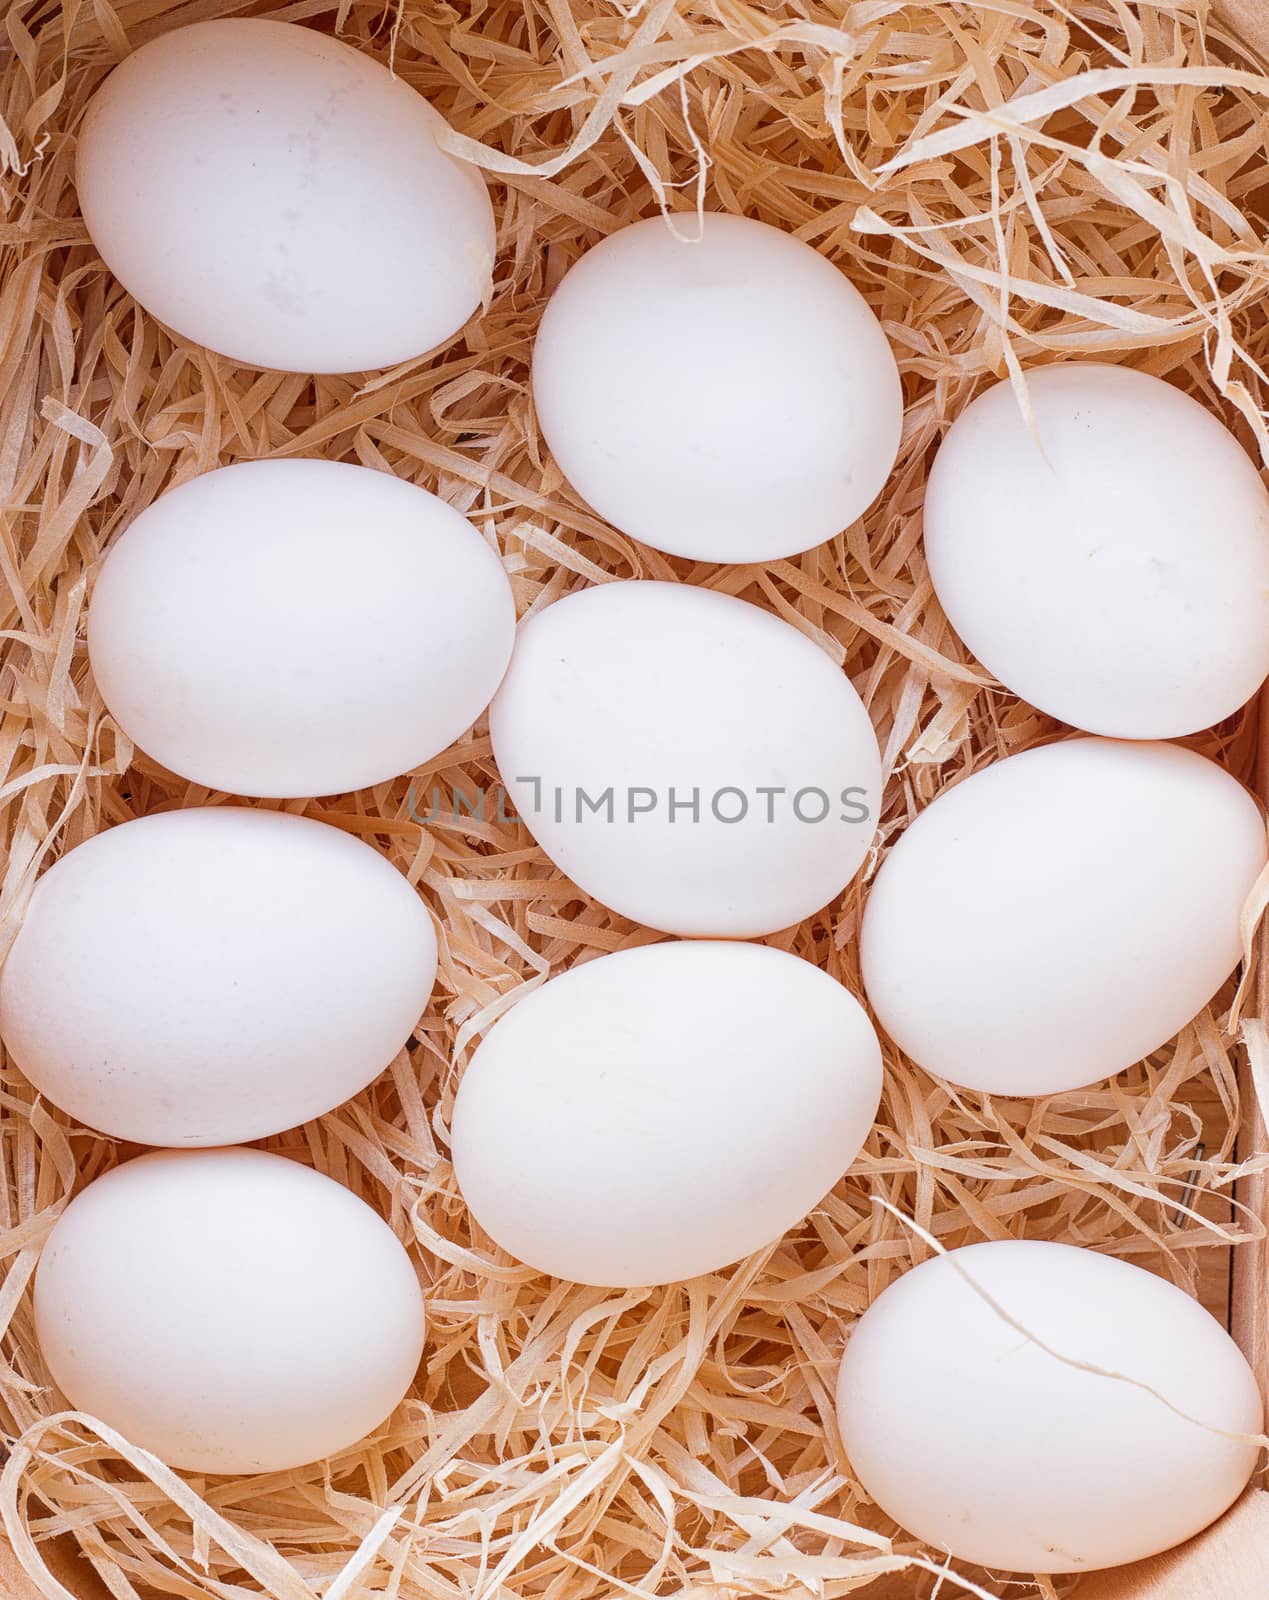 white chicken eggs by victosha